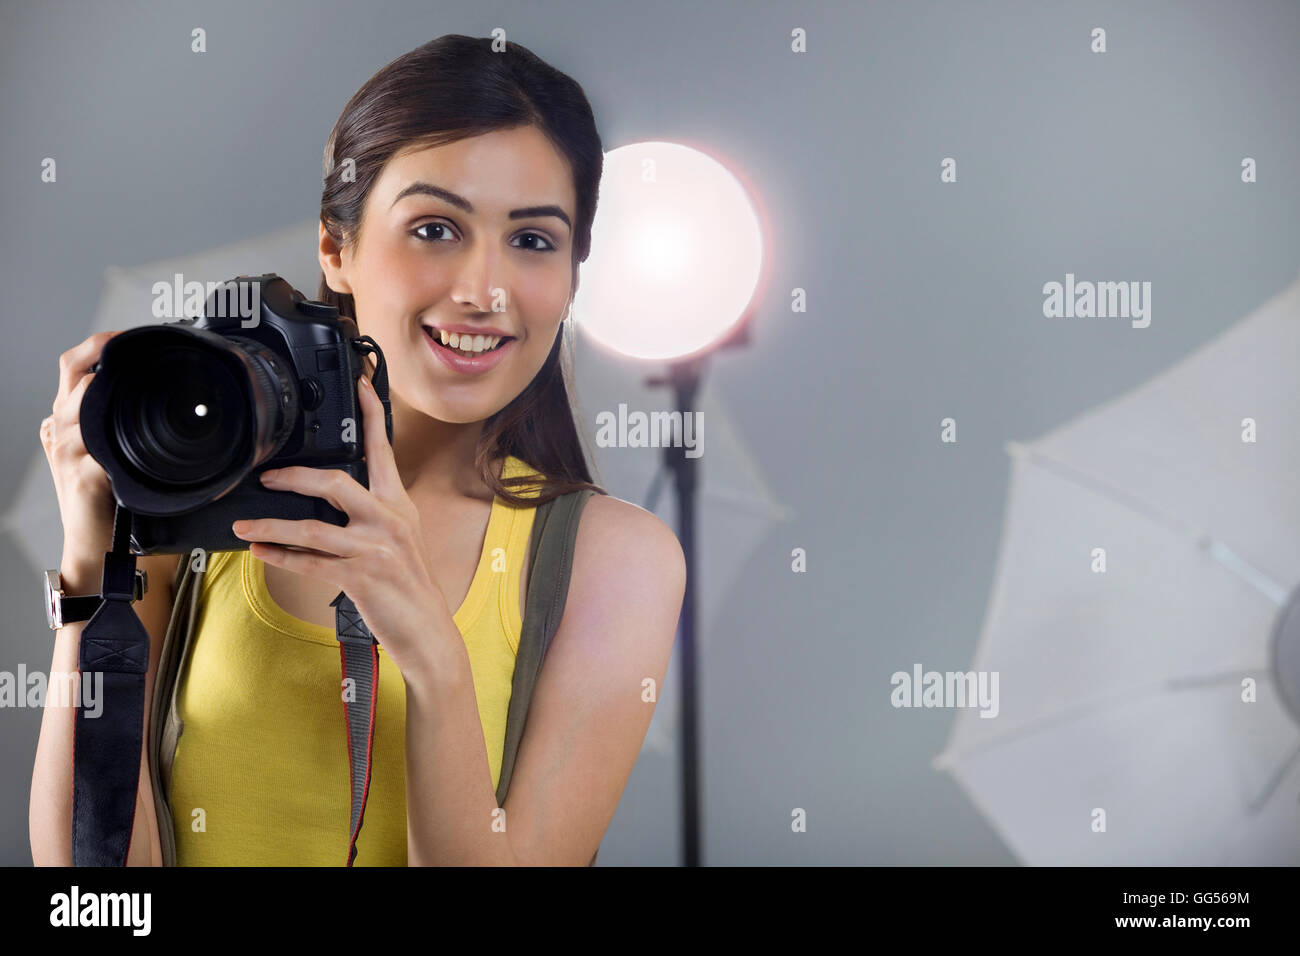 Ritratto di giovane donna fotografo con fotocamera digitale in studio Foto Stock